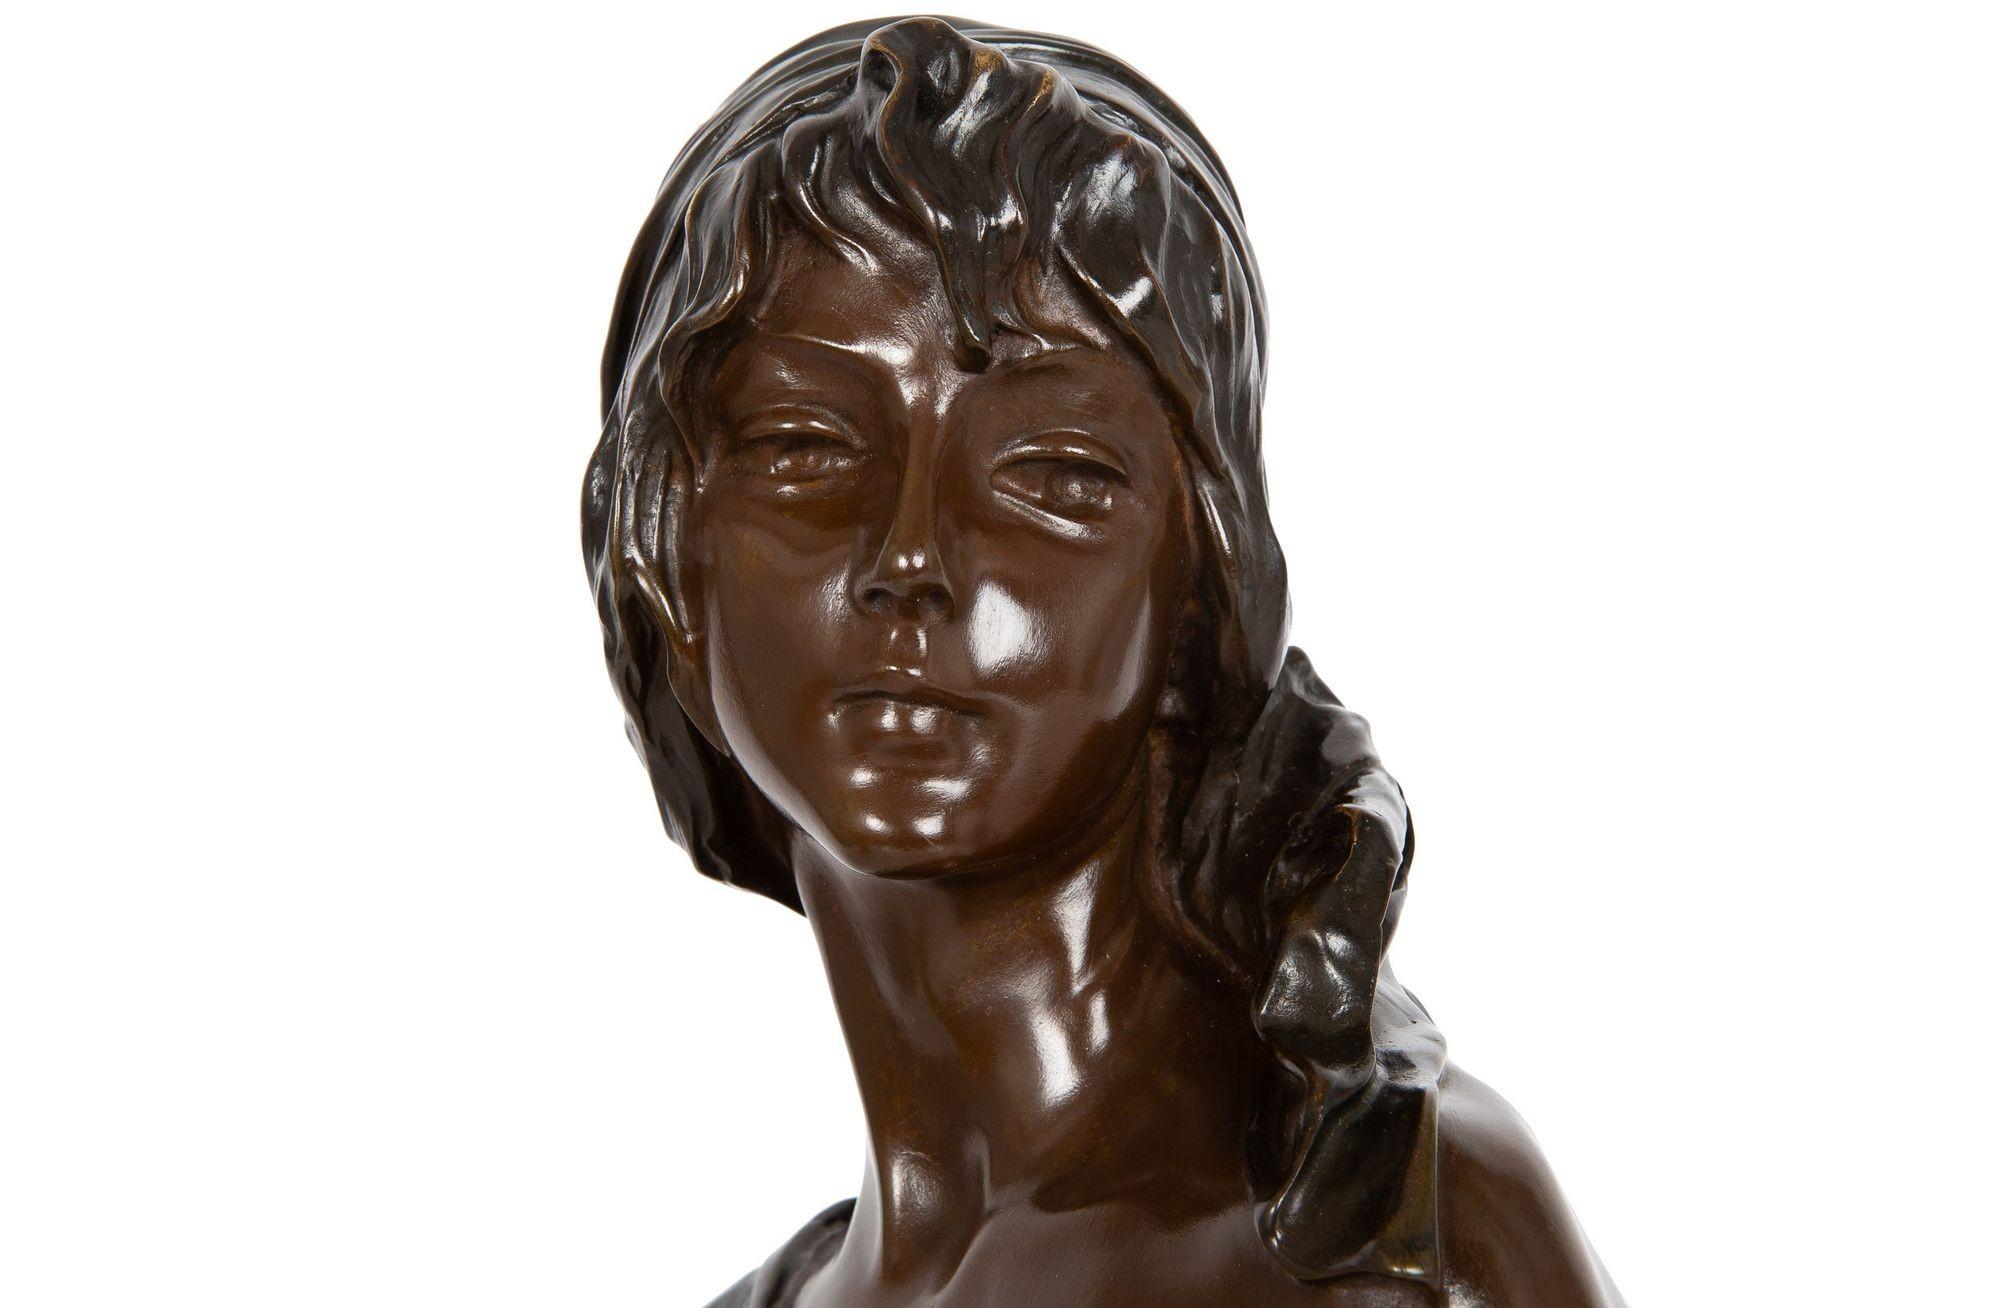 20th Century Art Nouveau Bronze Sculpture “Cendrillon” or Cinderella by Emmanuel Villanis For Sale